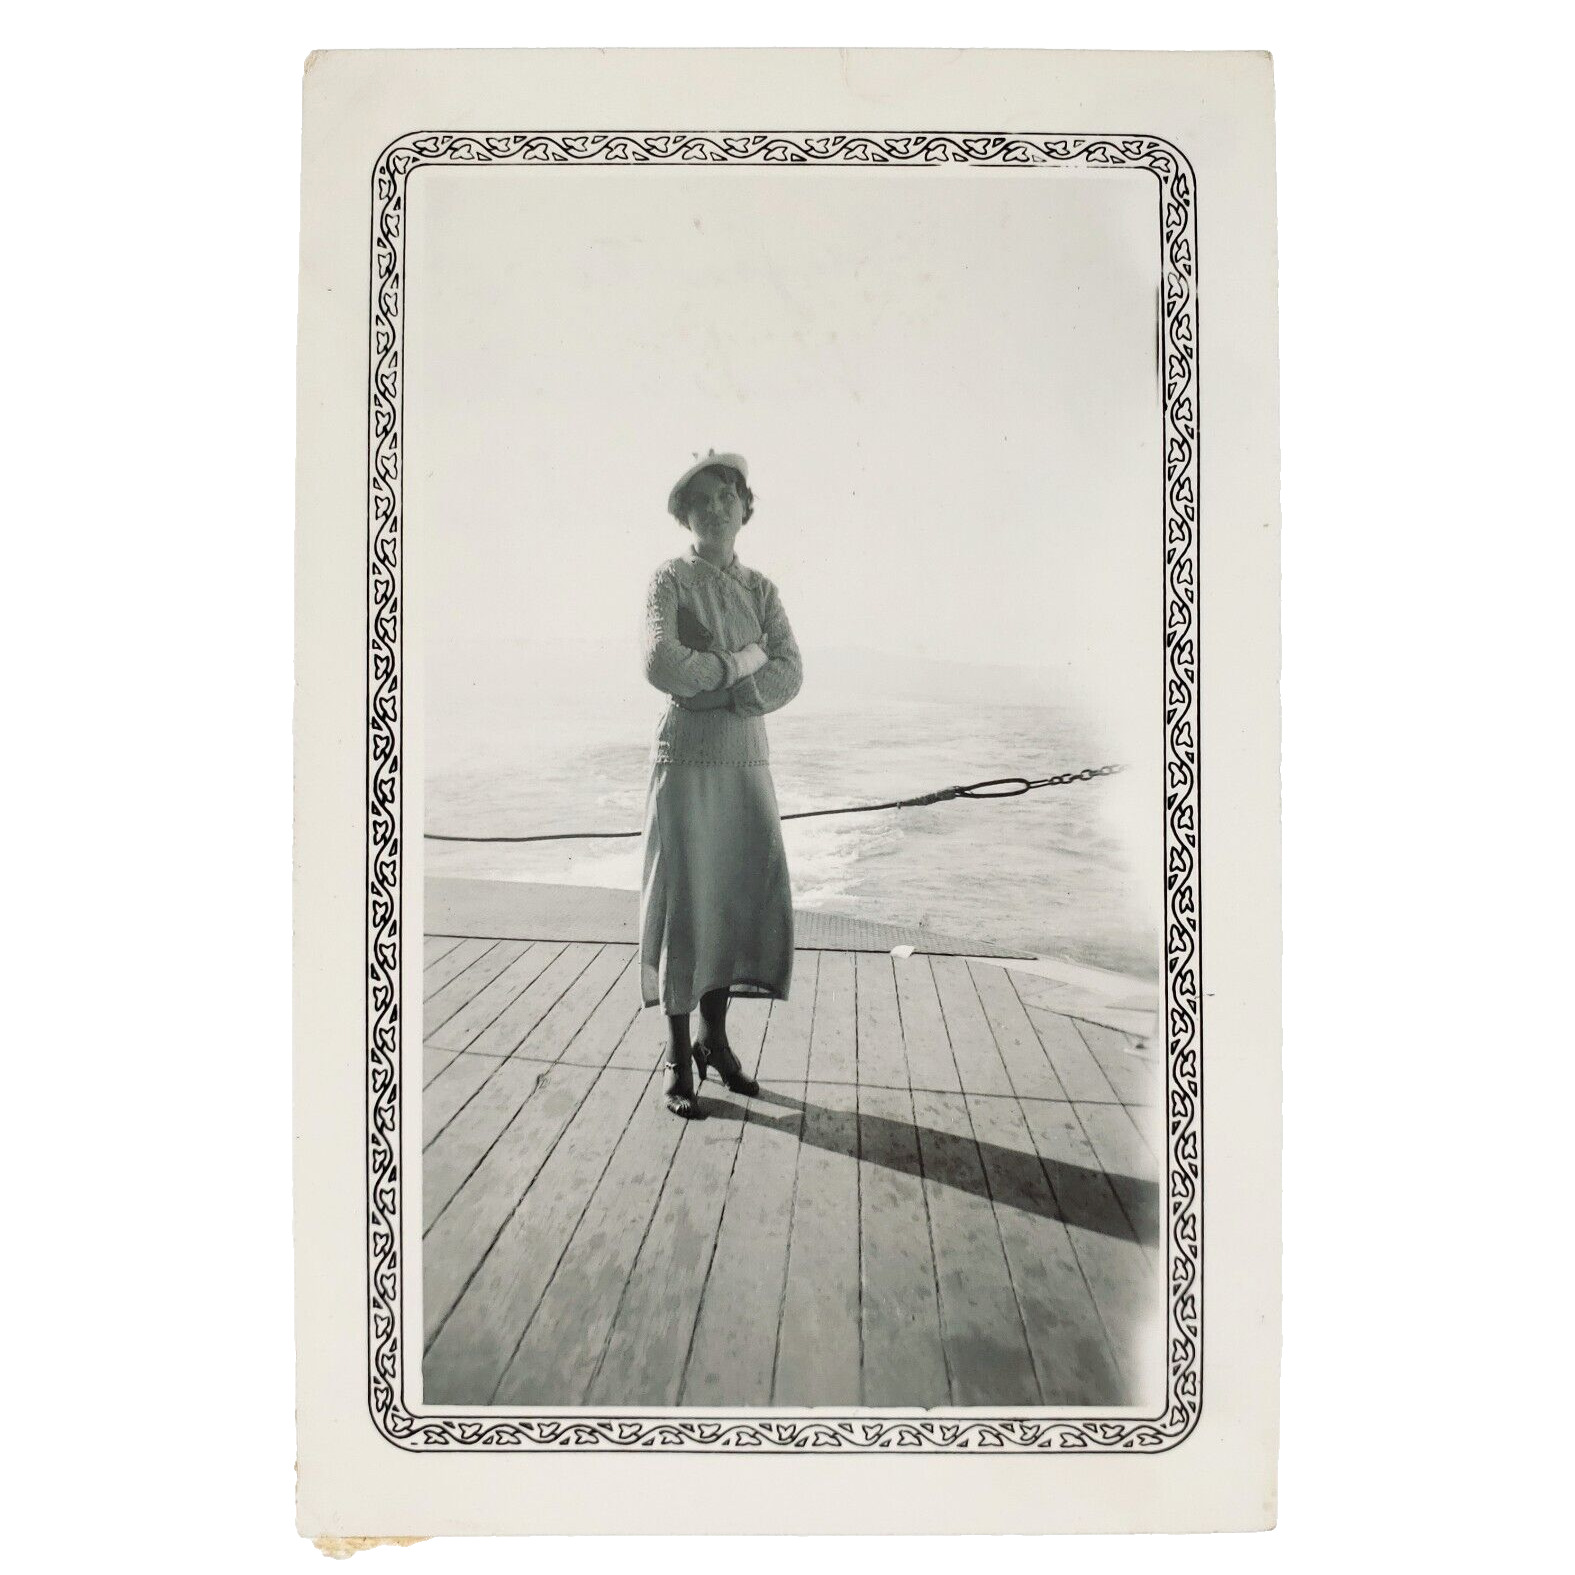 Astoria–Megler Ferry Woman Photo 1940s Columbia River Oregon Washington C3495